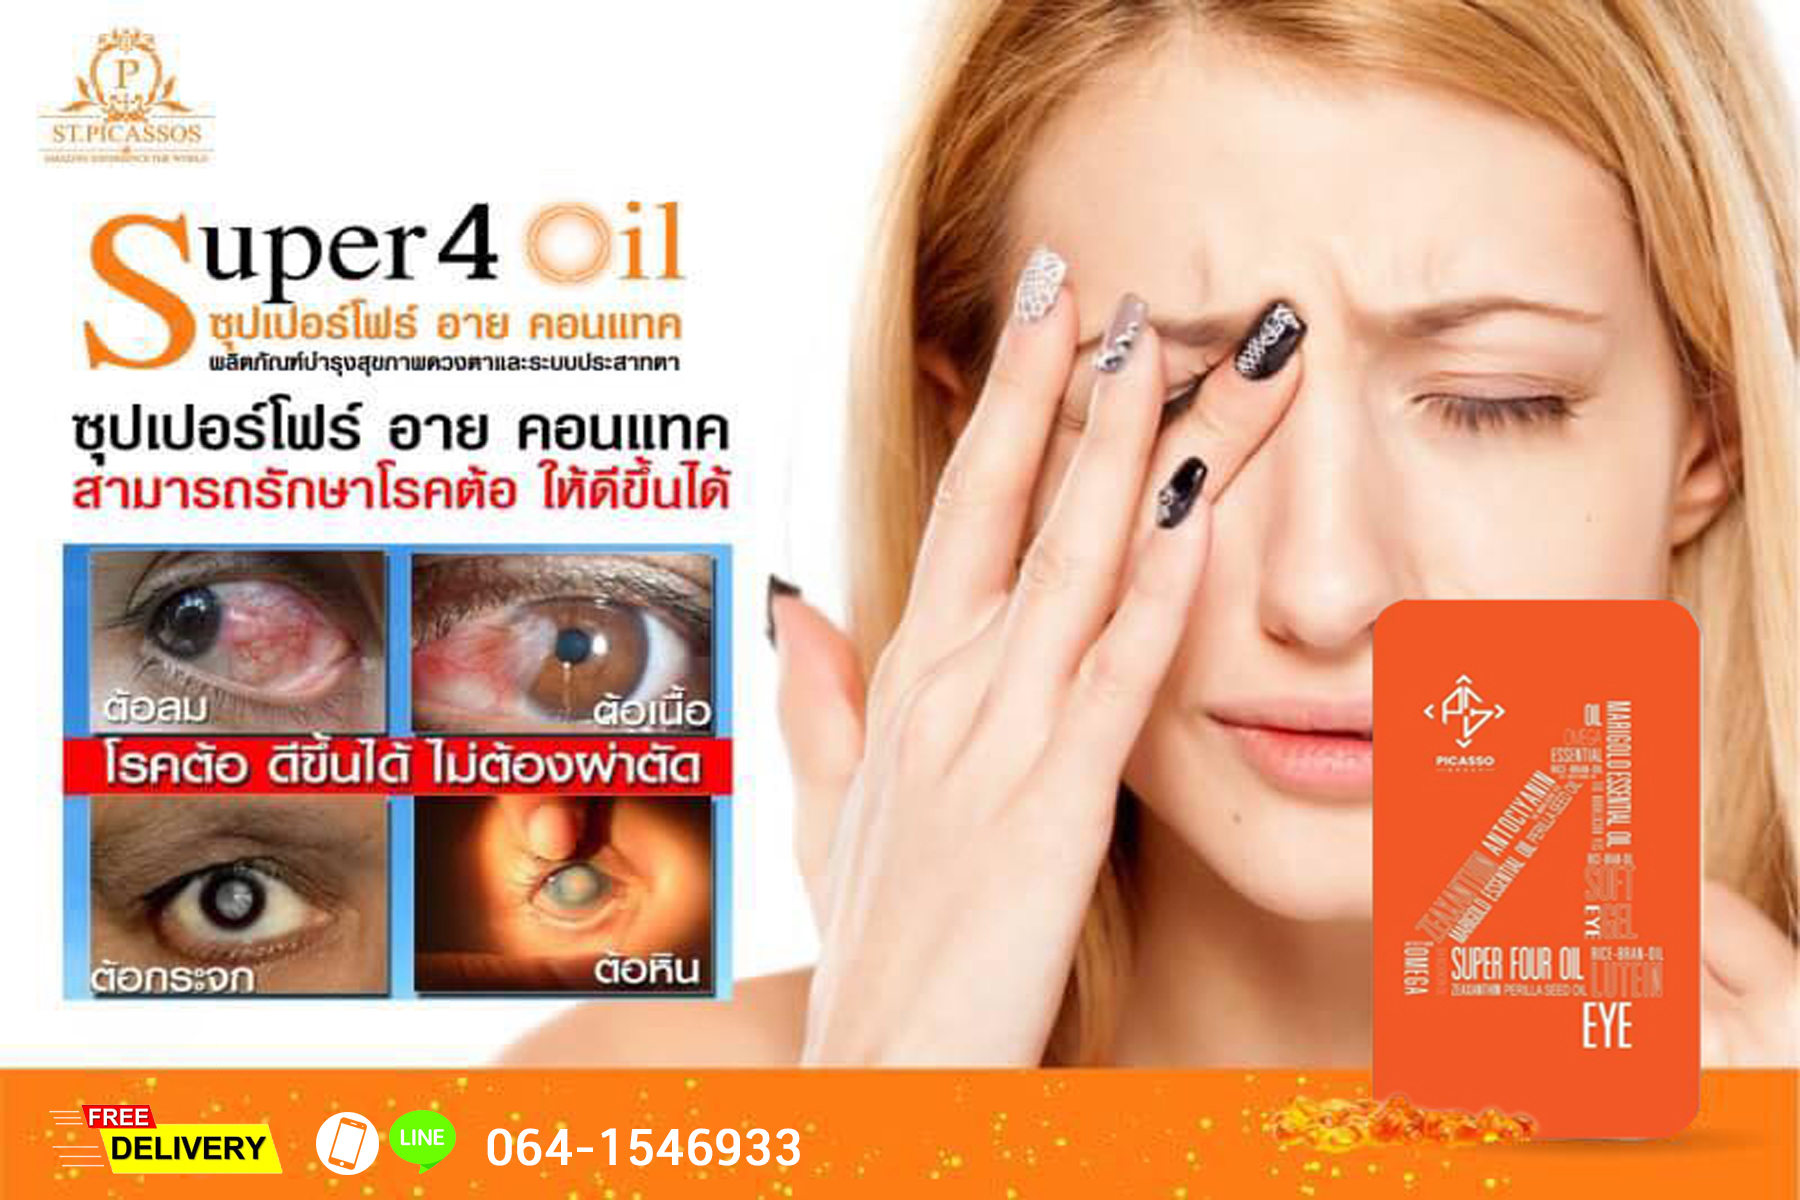 Super Four S4 อาหารเสริมสุขภาพดวงตา สายตา และประสาทตา